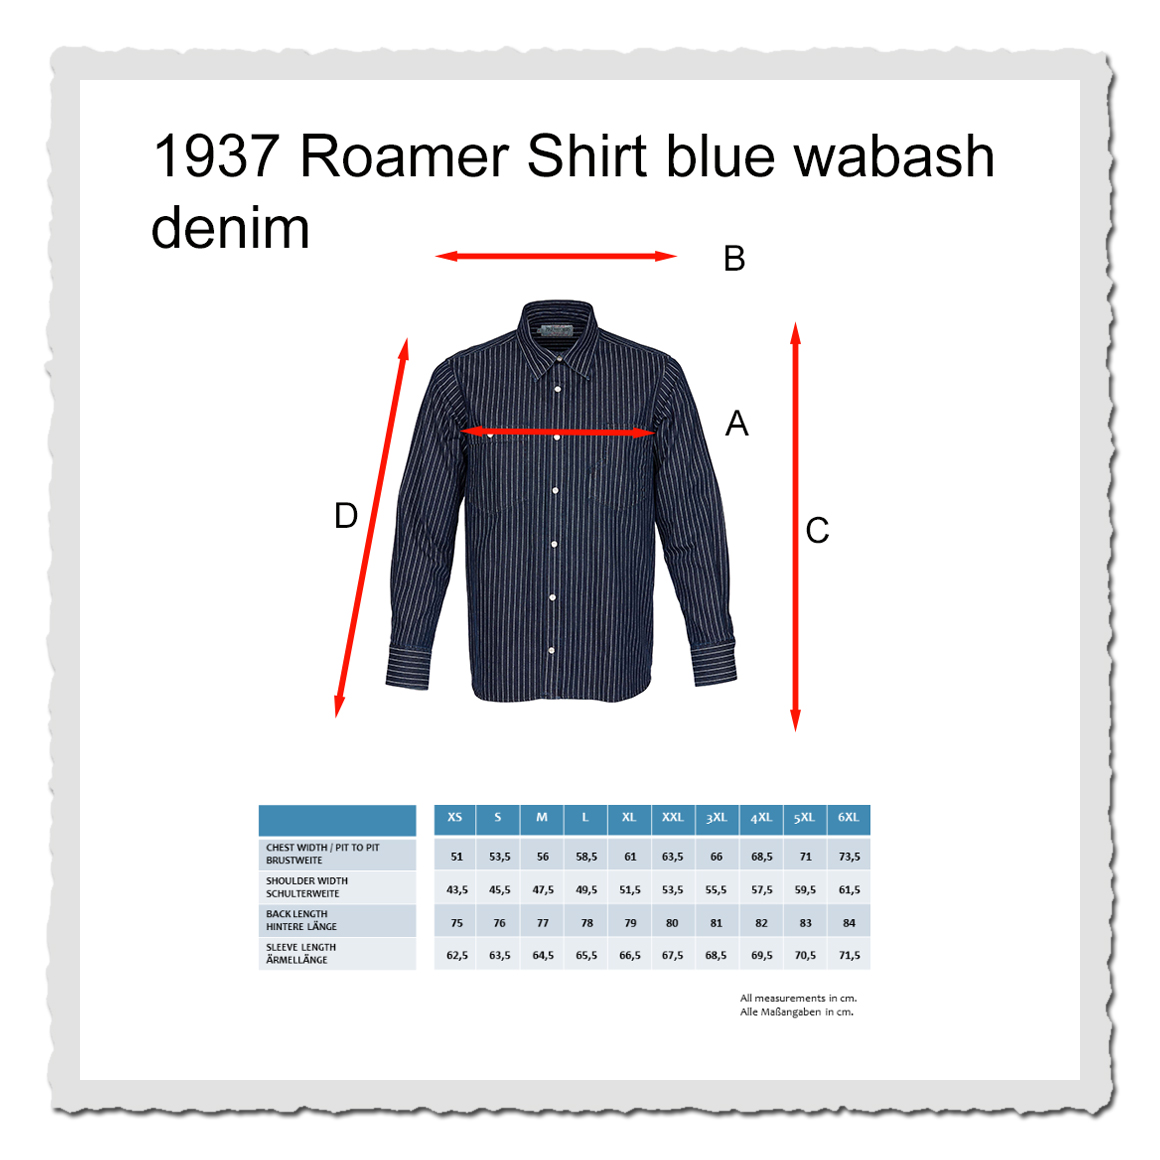 1937 Roamer Shirt blue wabash denim